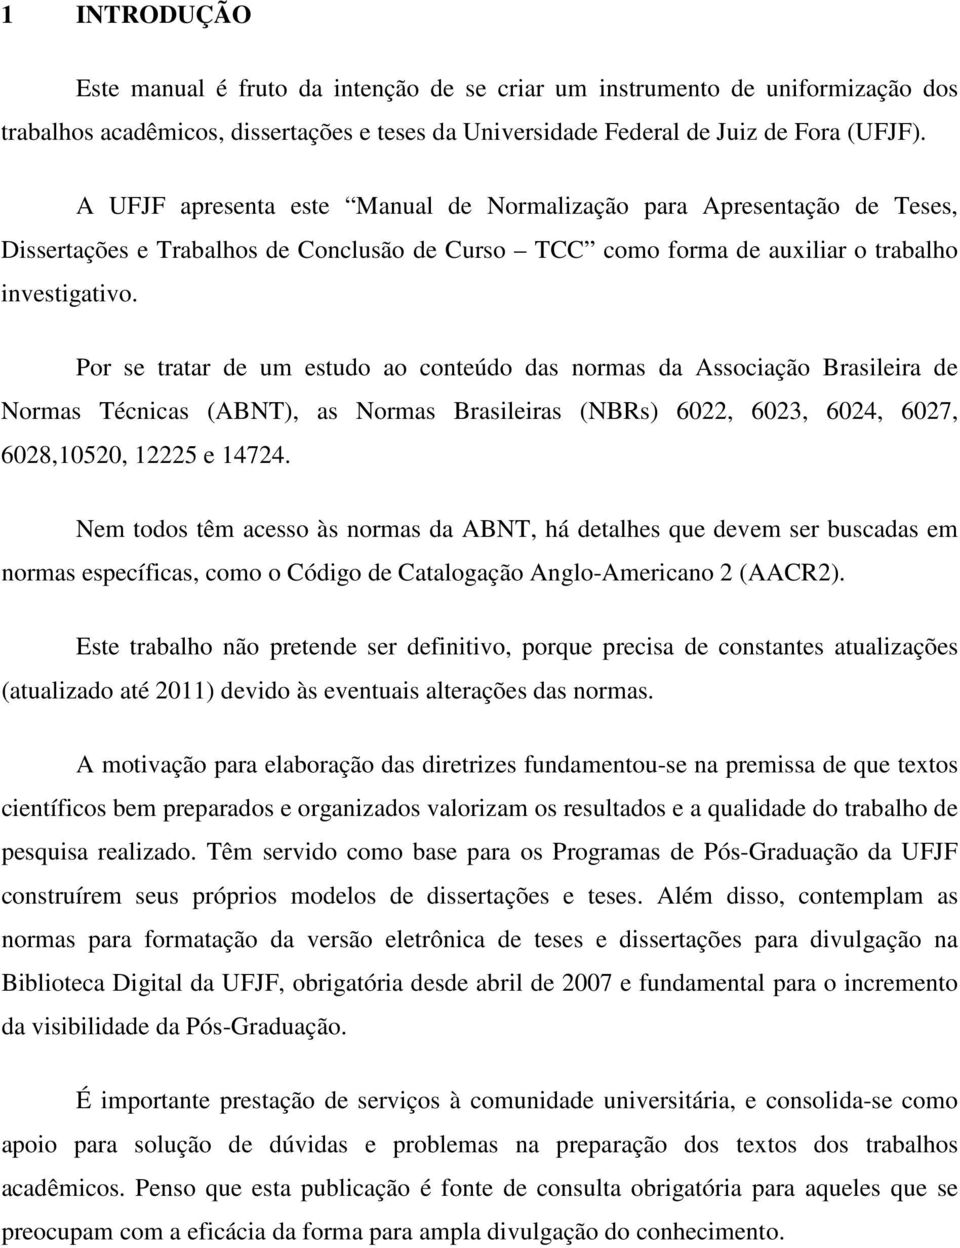 Por se tratar de um estudo ao conteúdo das normas da Associação Brasileira de Normas Técnicas (ABNT), as Normas Brasileiras (NBRs) 6022, 6023, 6024, 6027, 6028,10520, 12225 e 14724.